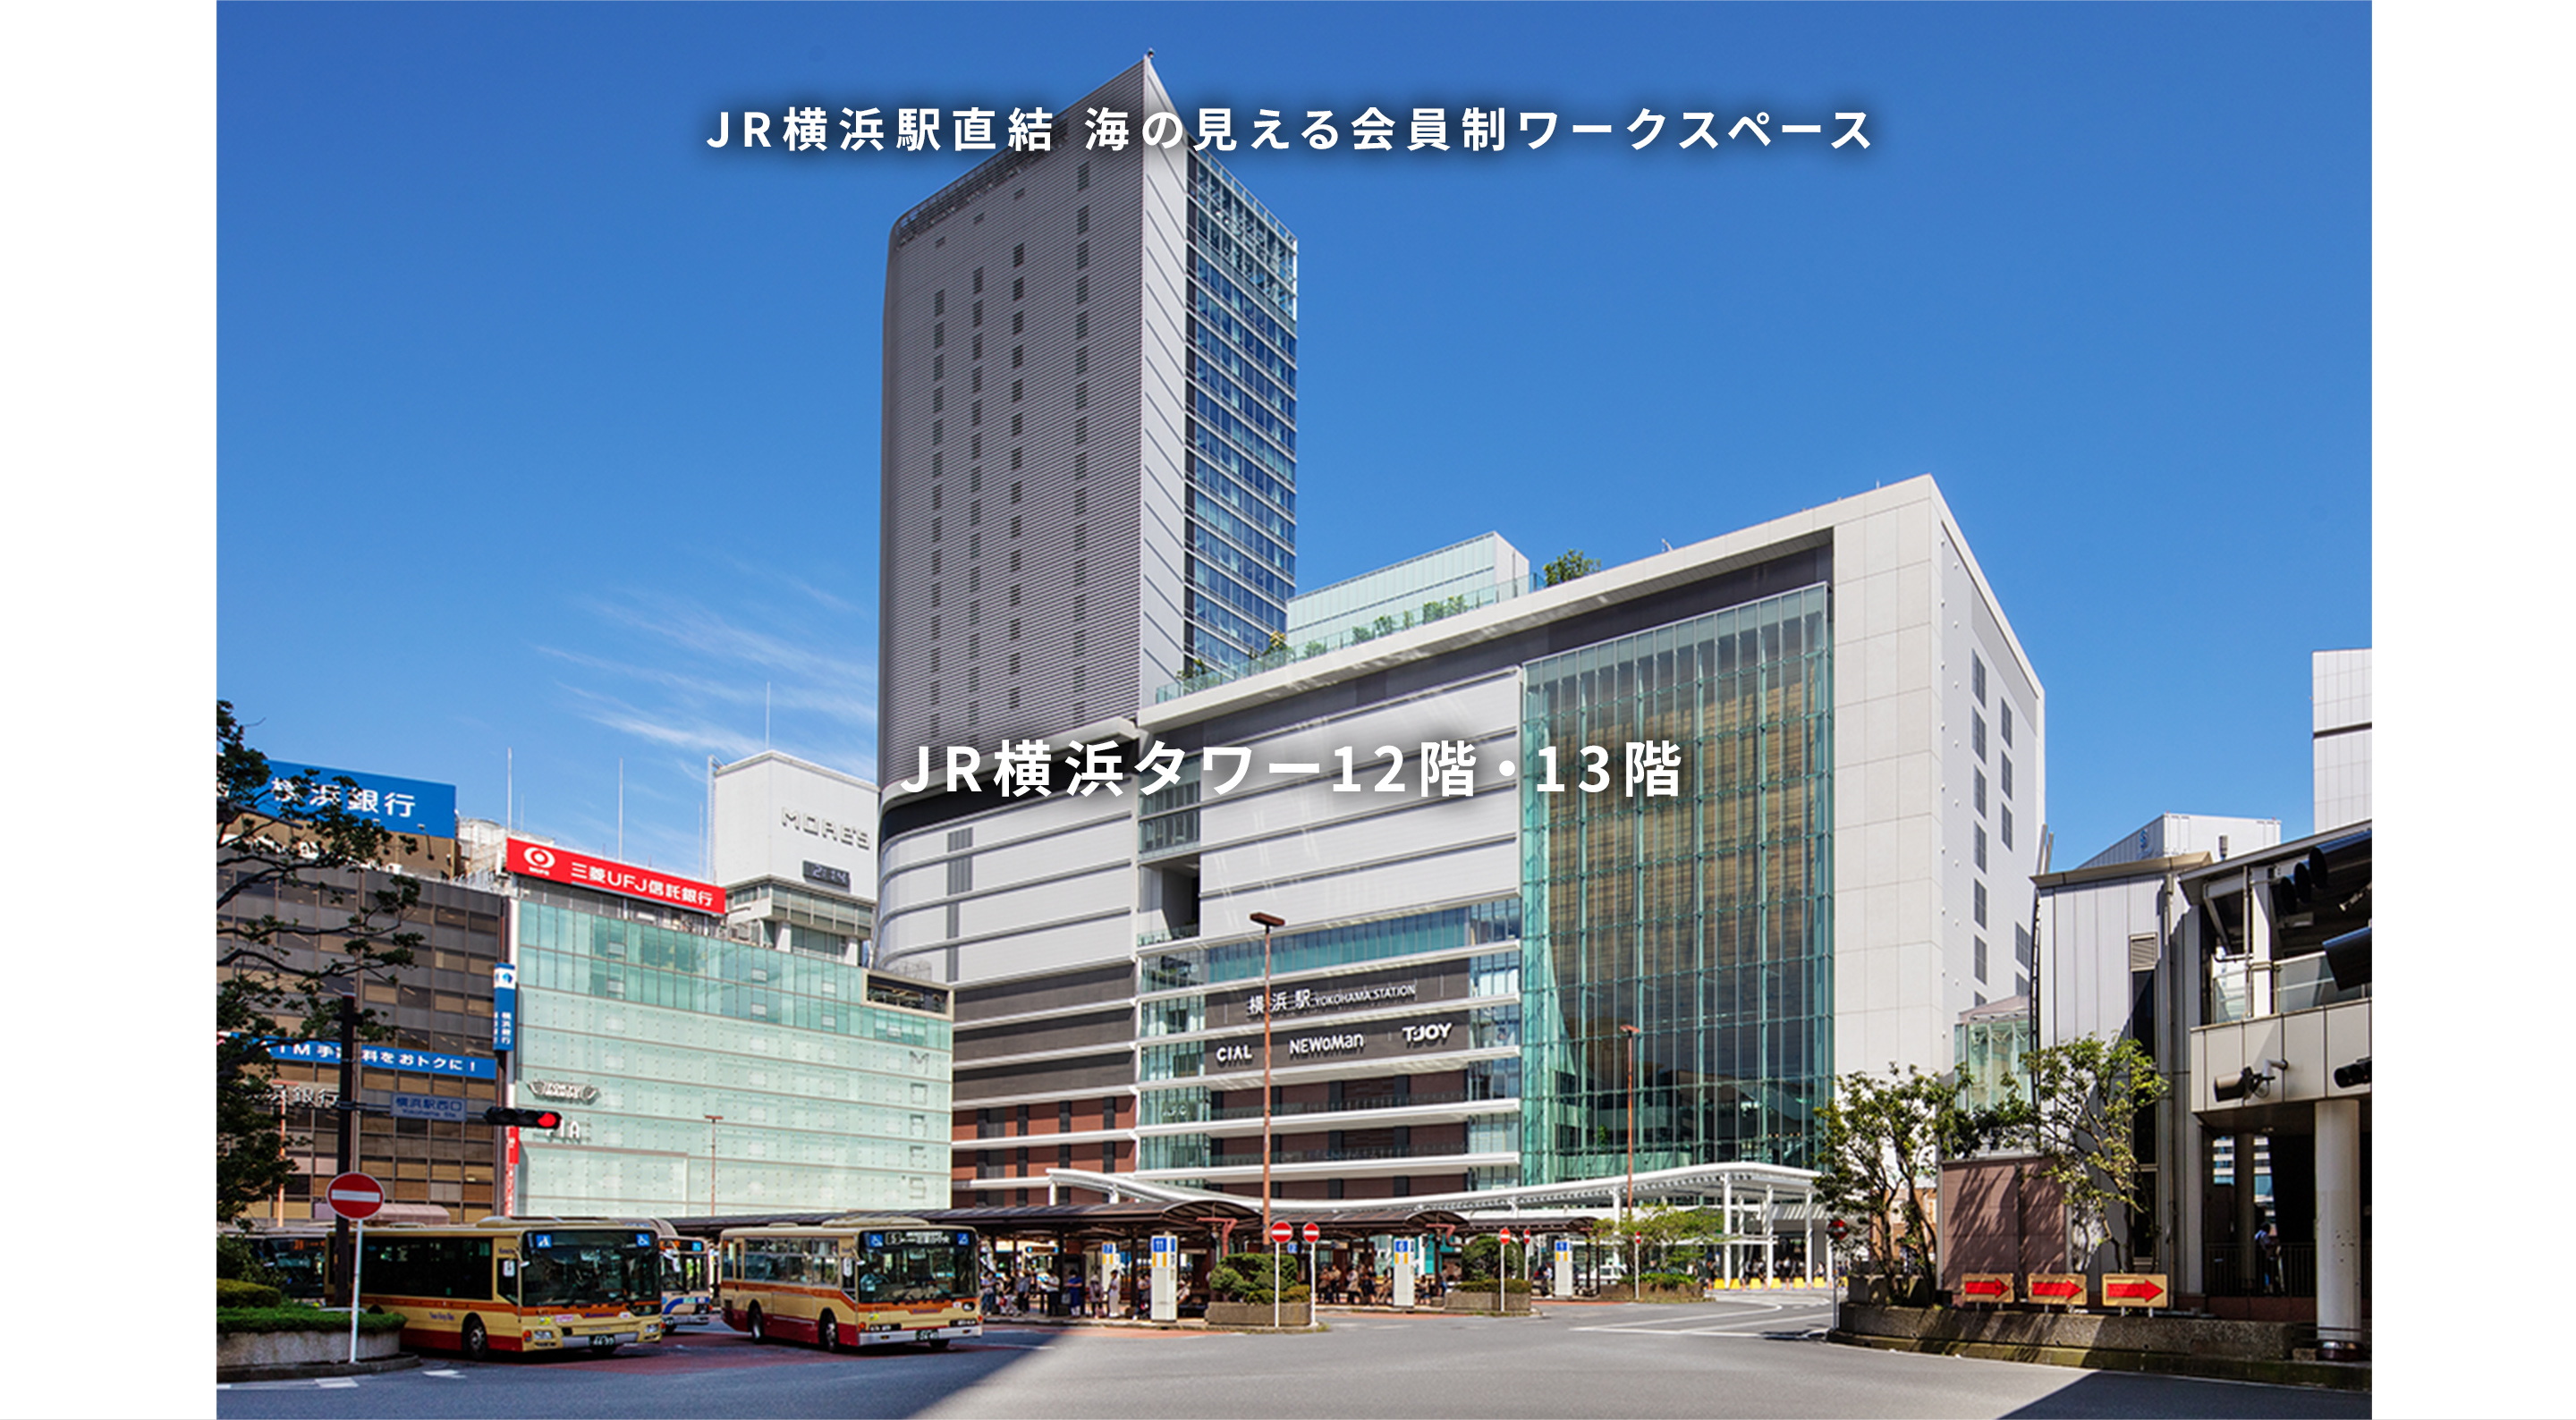 JR横浜駅直結 会員制ワークスペース JR横浜タワー12階・13階